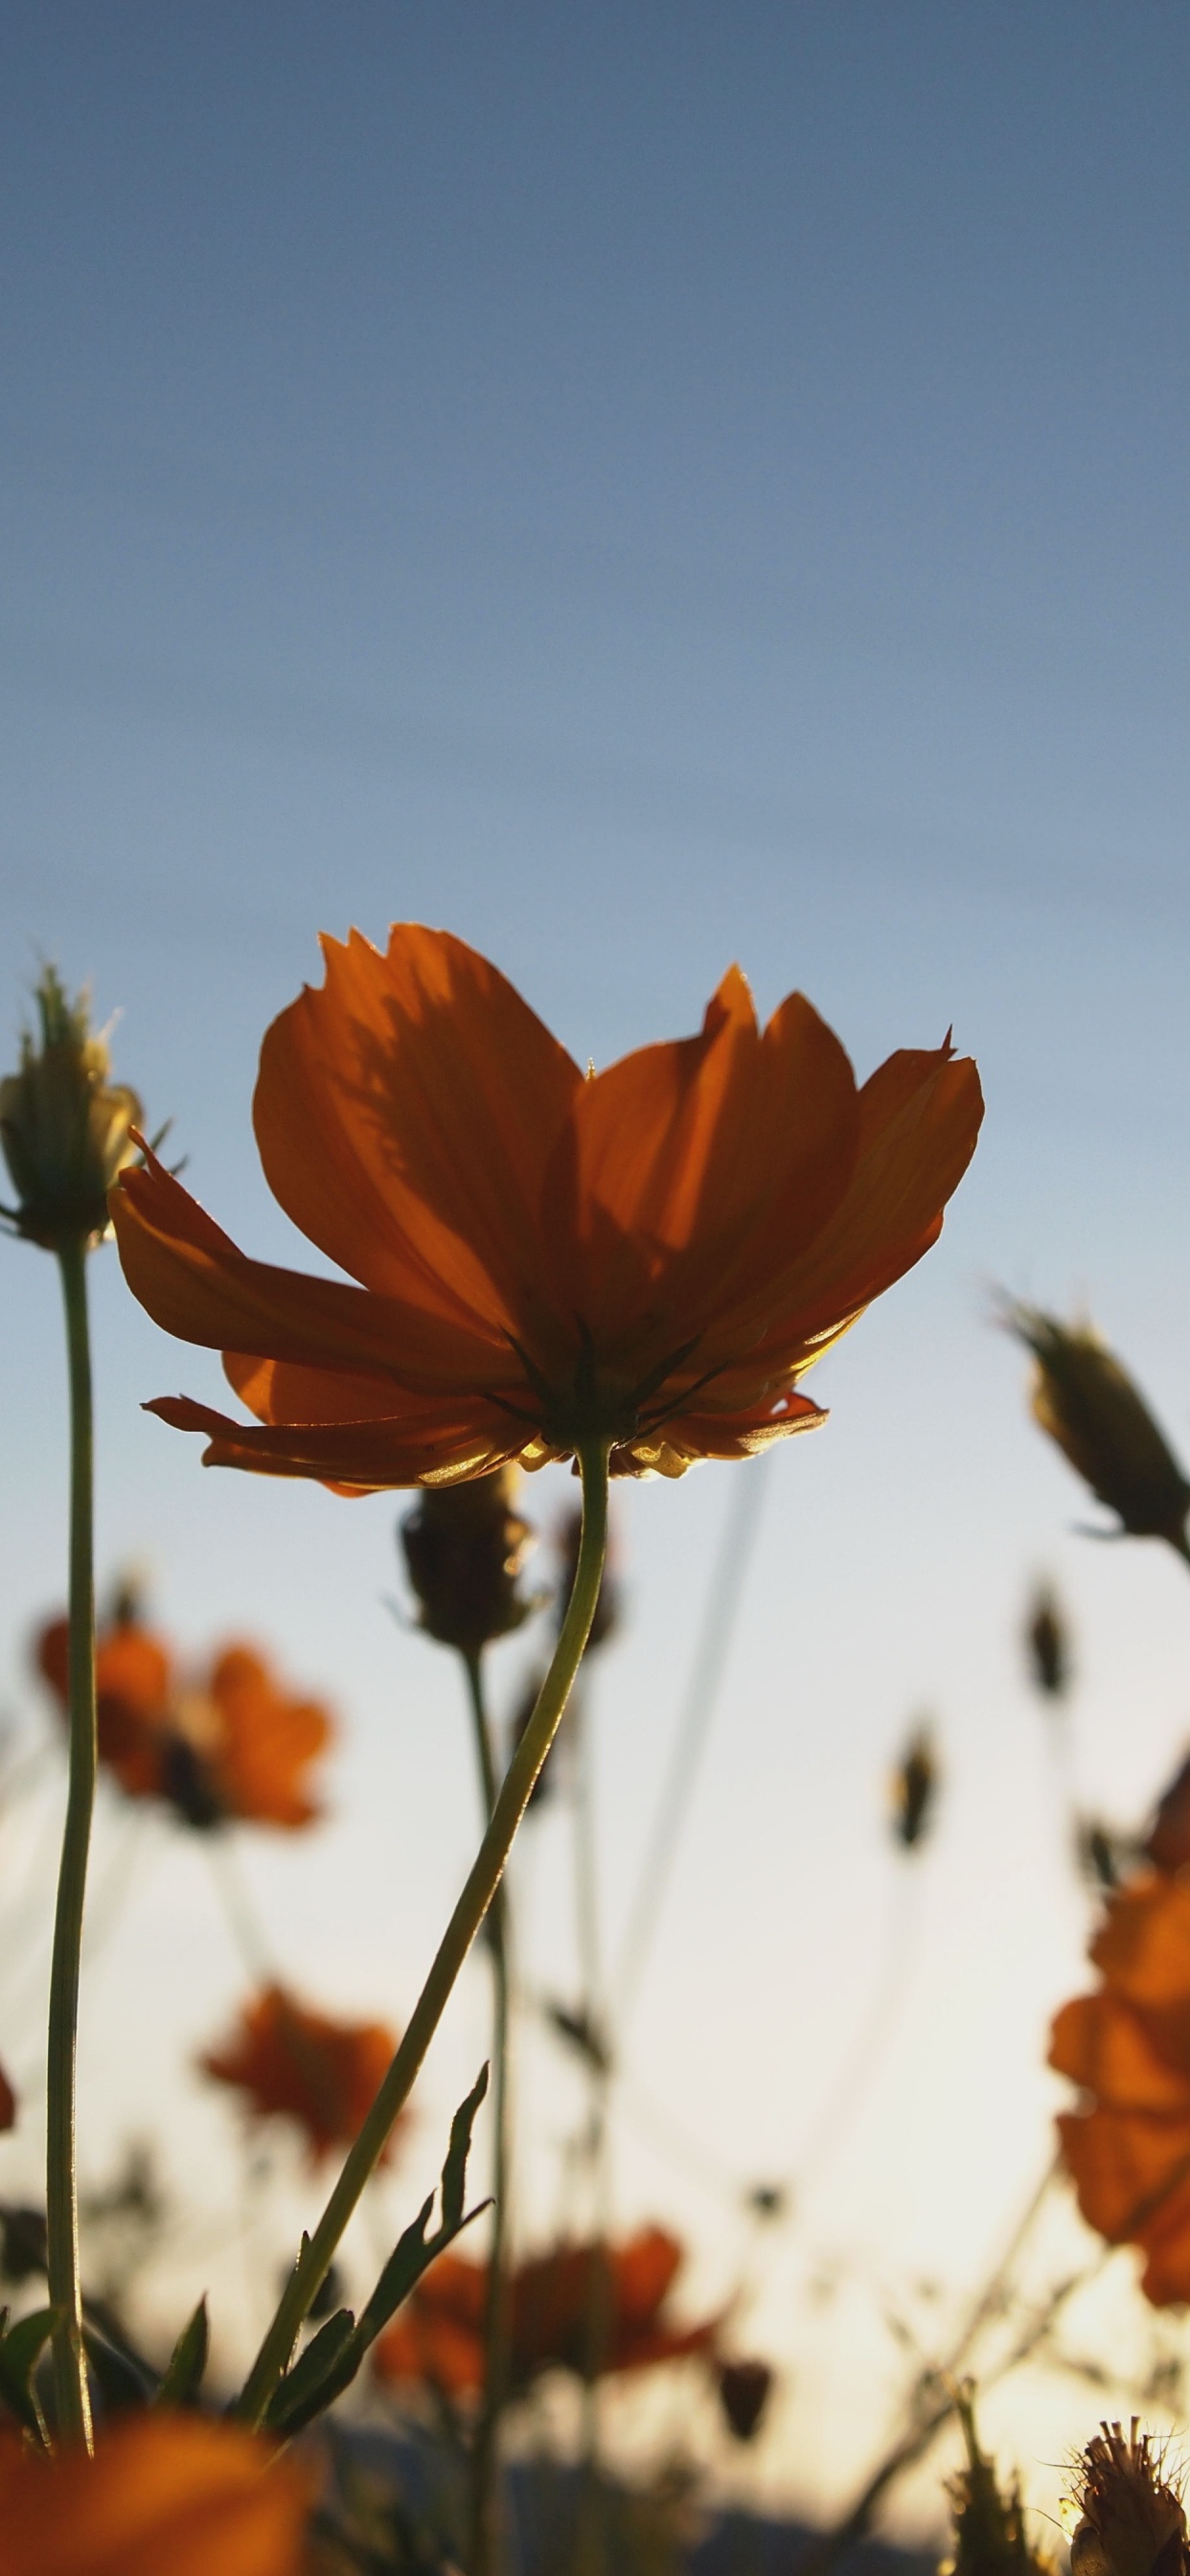 Orange Flower in Tilt Shift Lens. Wallpaper in 1242x2688 Resolution